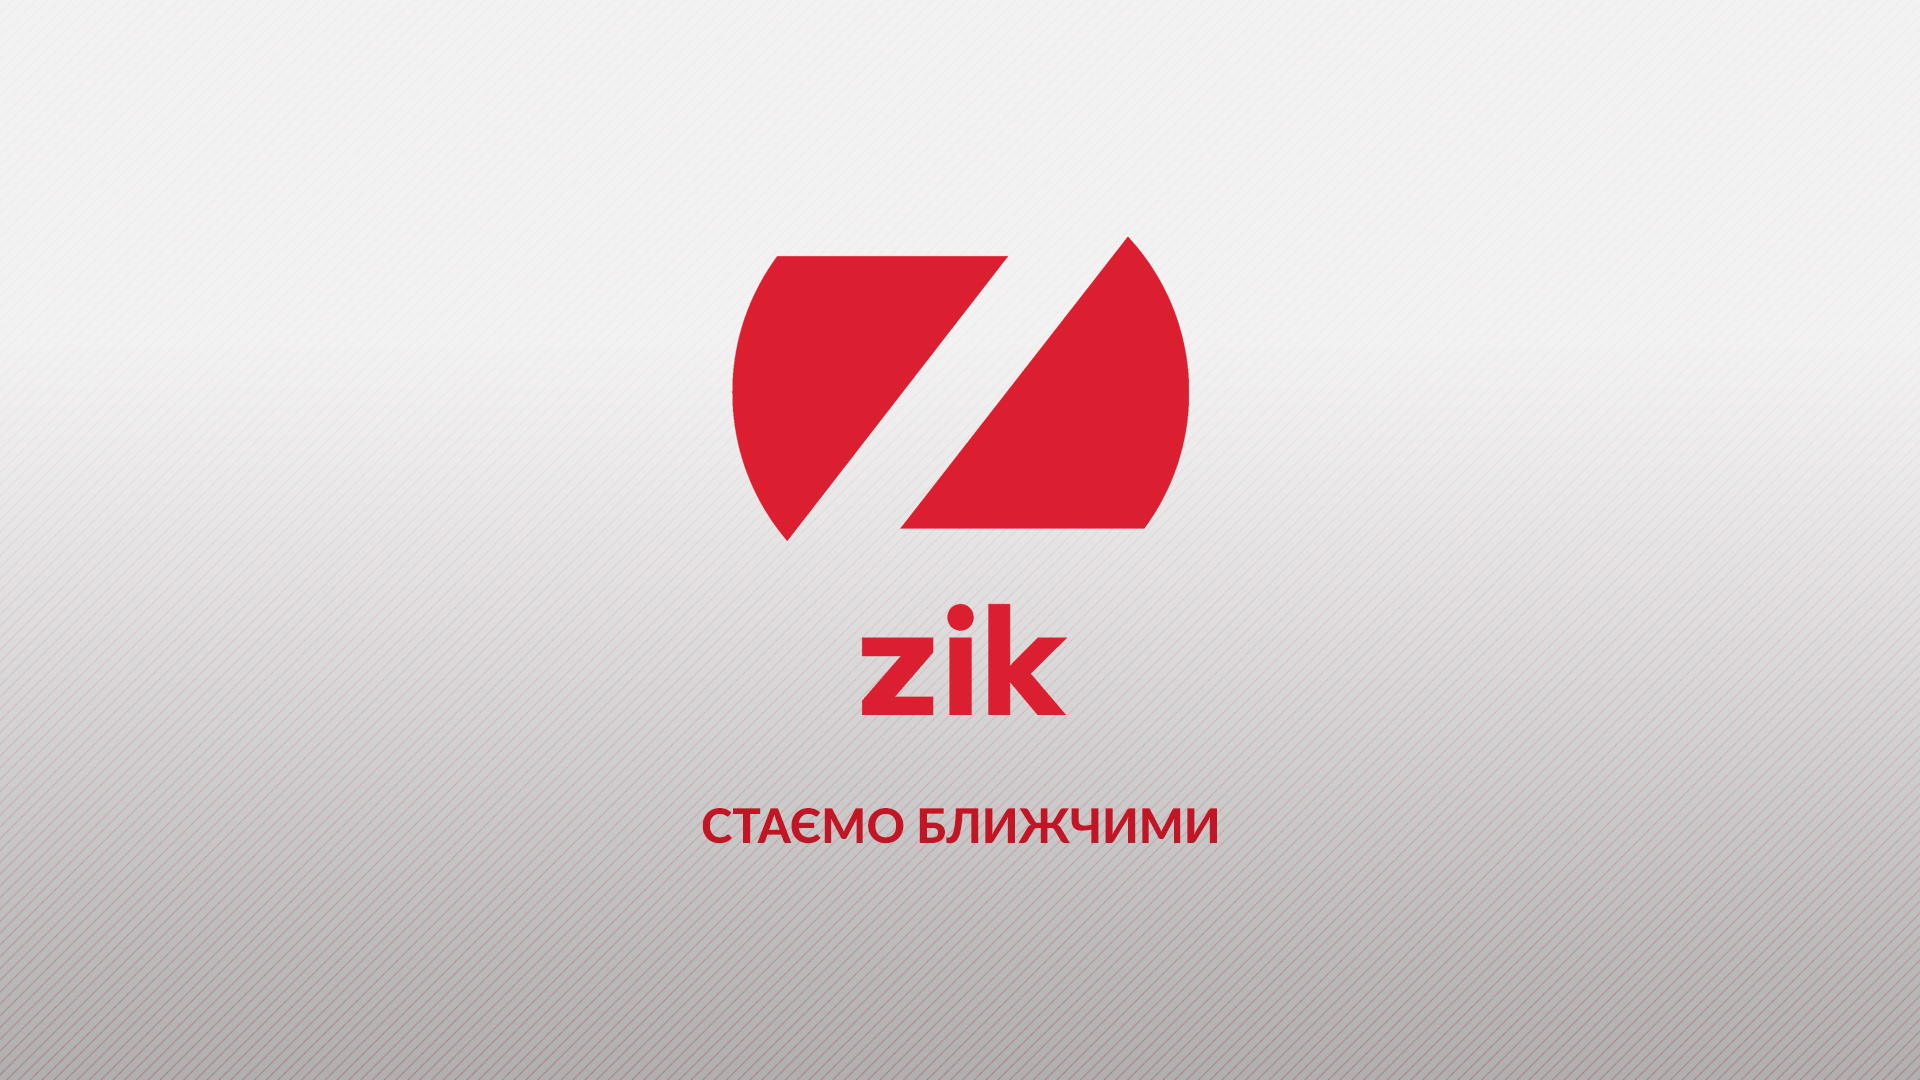 Соратник Медведчука привел на телеканал ZIK новых менеджеров. Вот о чем они говорили на закрытой встрече с сотрудниками (о Медведчуке)